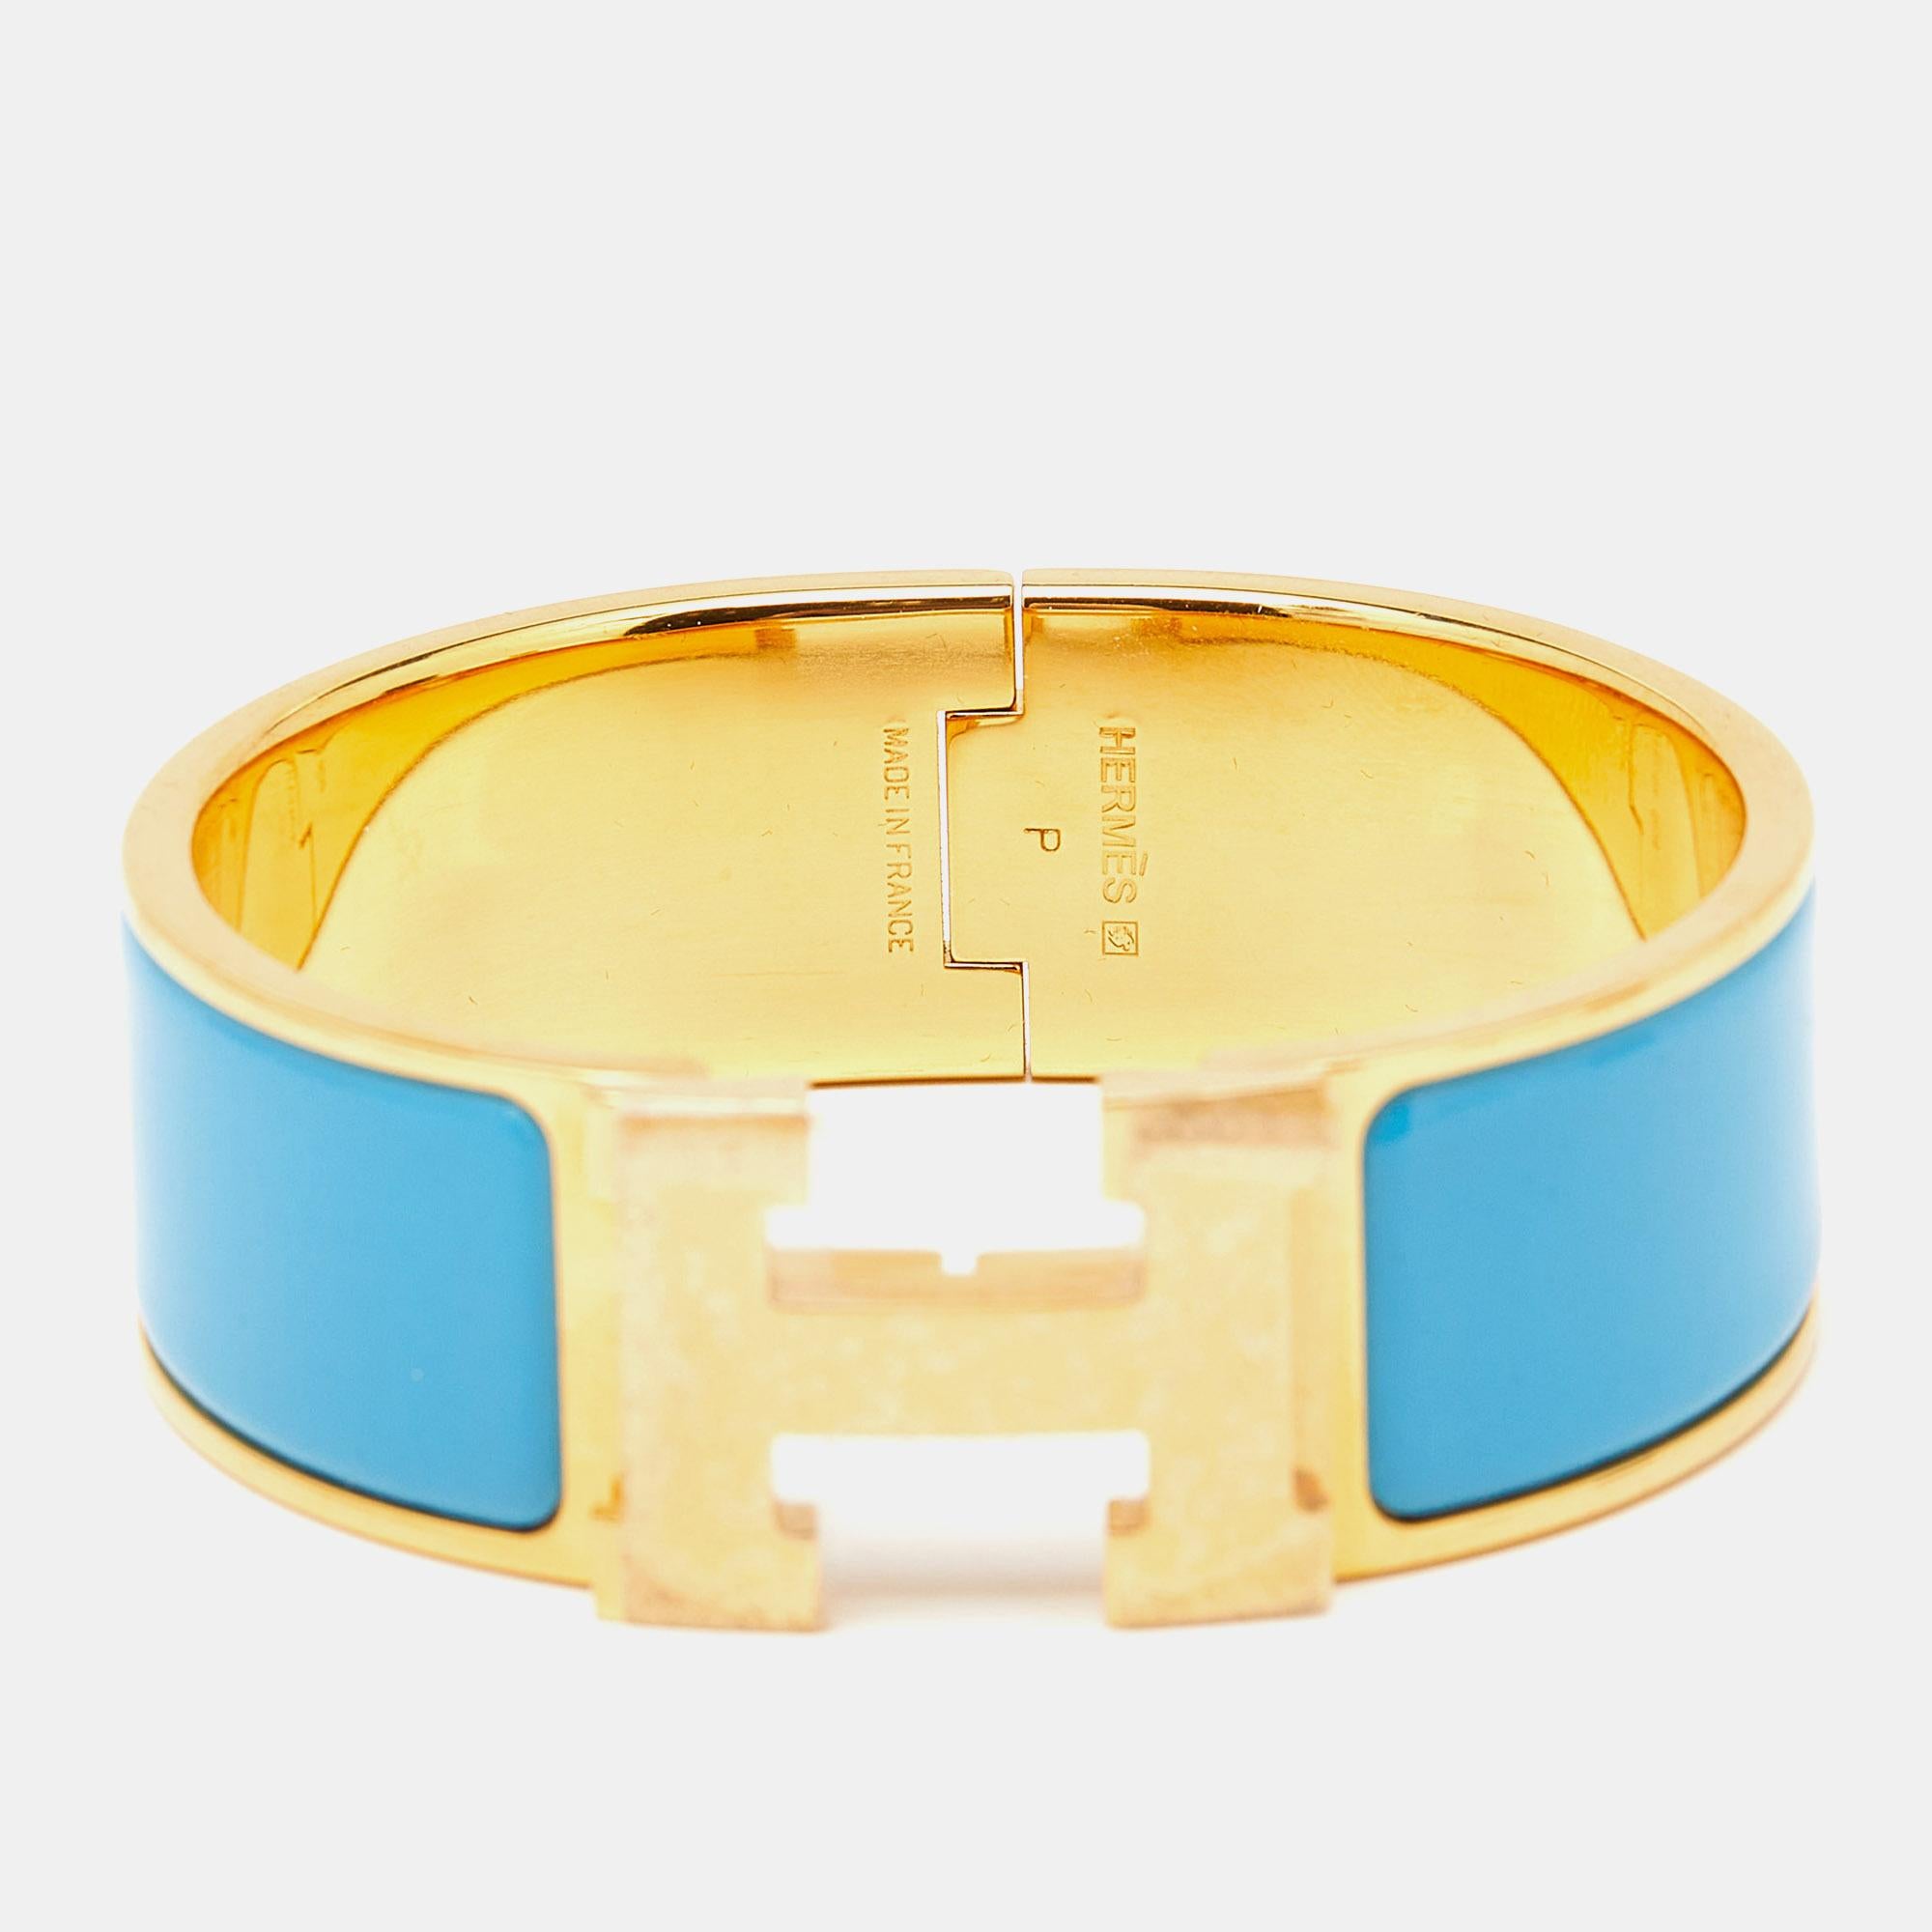 Le bracelet Clic Clac H d'Hermès est un bijou exquis. Le bracelet en émail bleu brillant est doté d'un fermoir en forme de H plaqué or, créant un contraste saisissant. Cet accessoire luxueux et élégant incarne le style intemporel et la